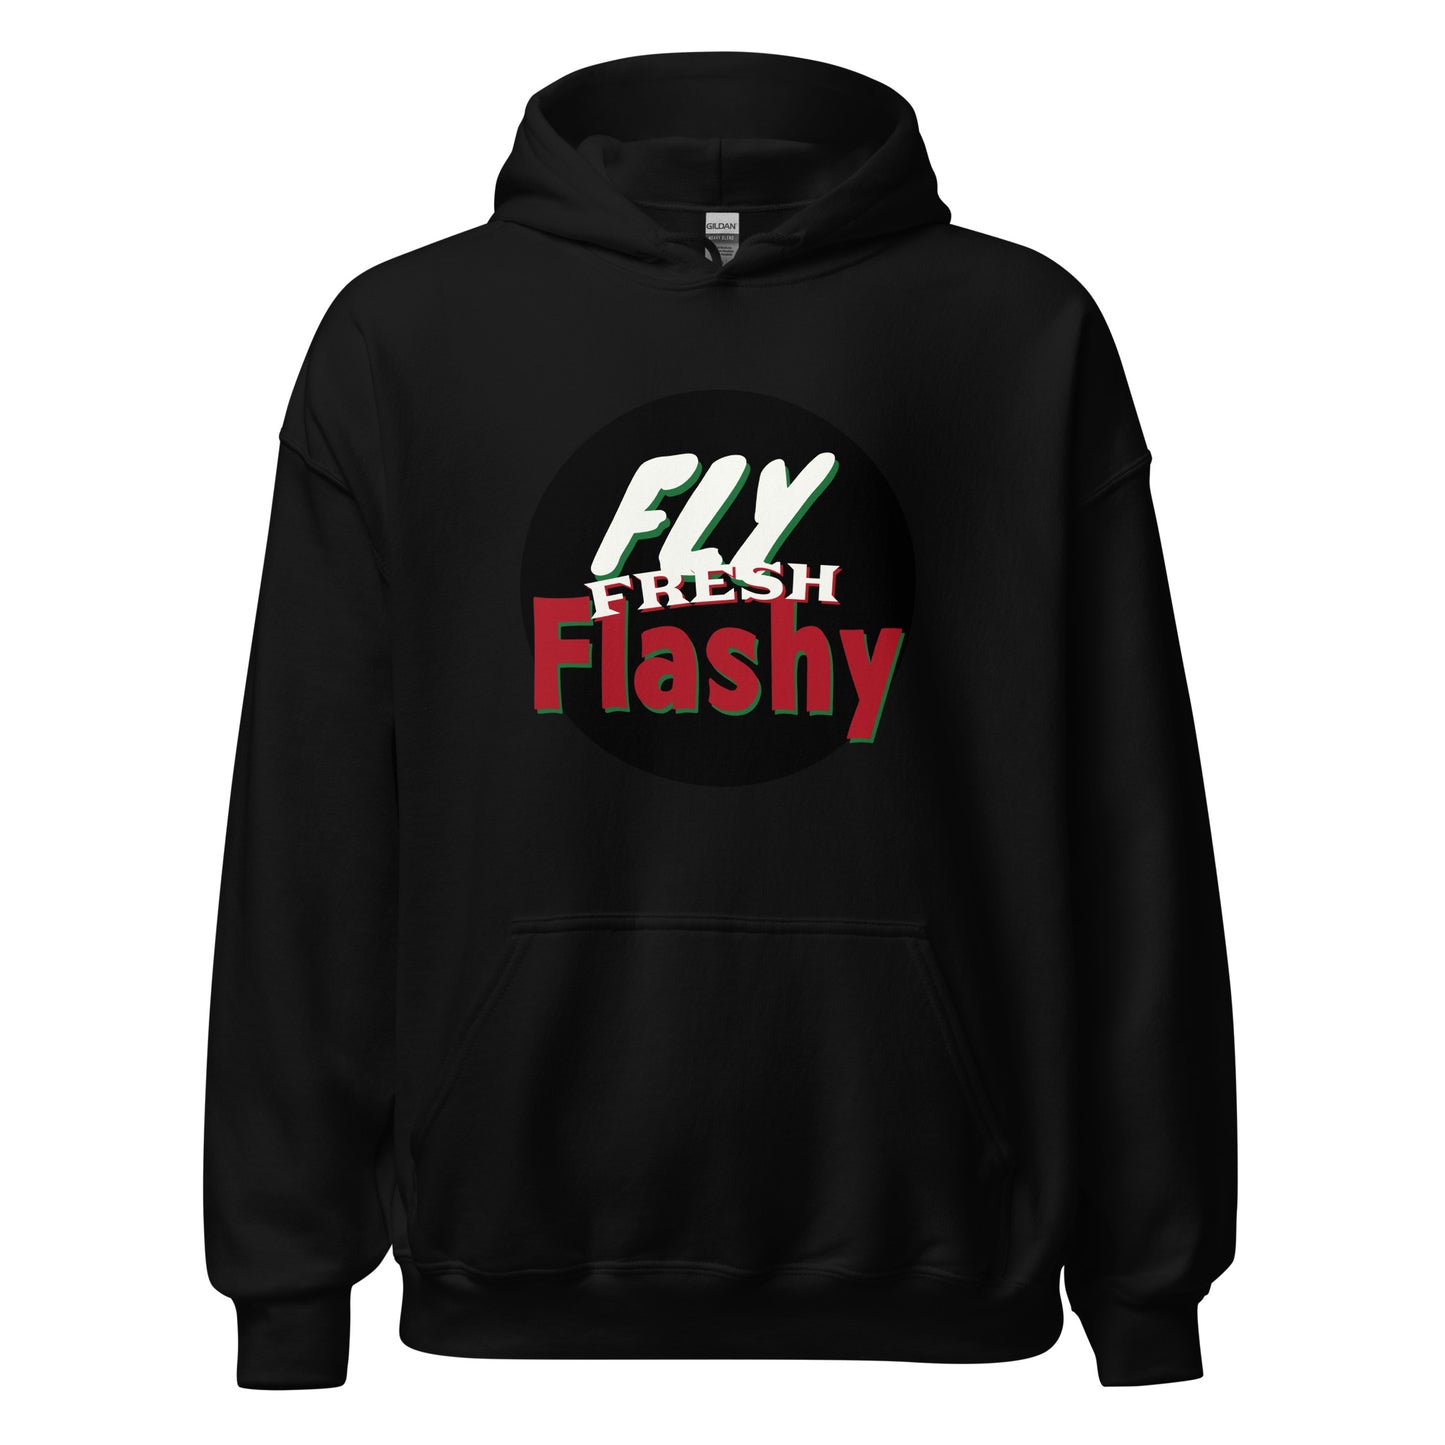 Fly Fresh Flashy Unisex Hoodie by Amagiri Young